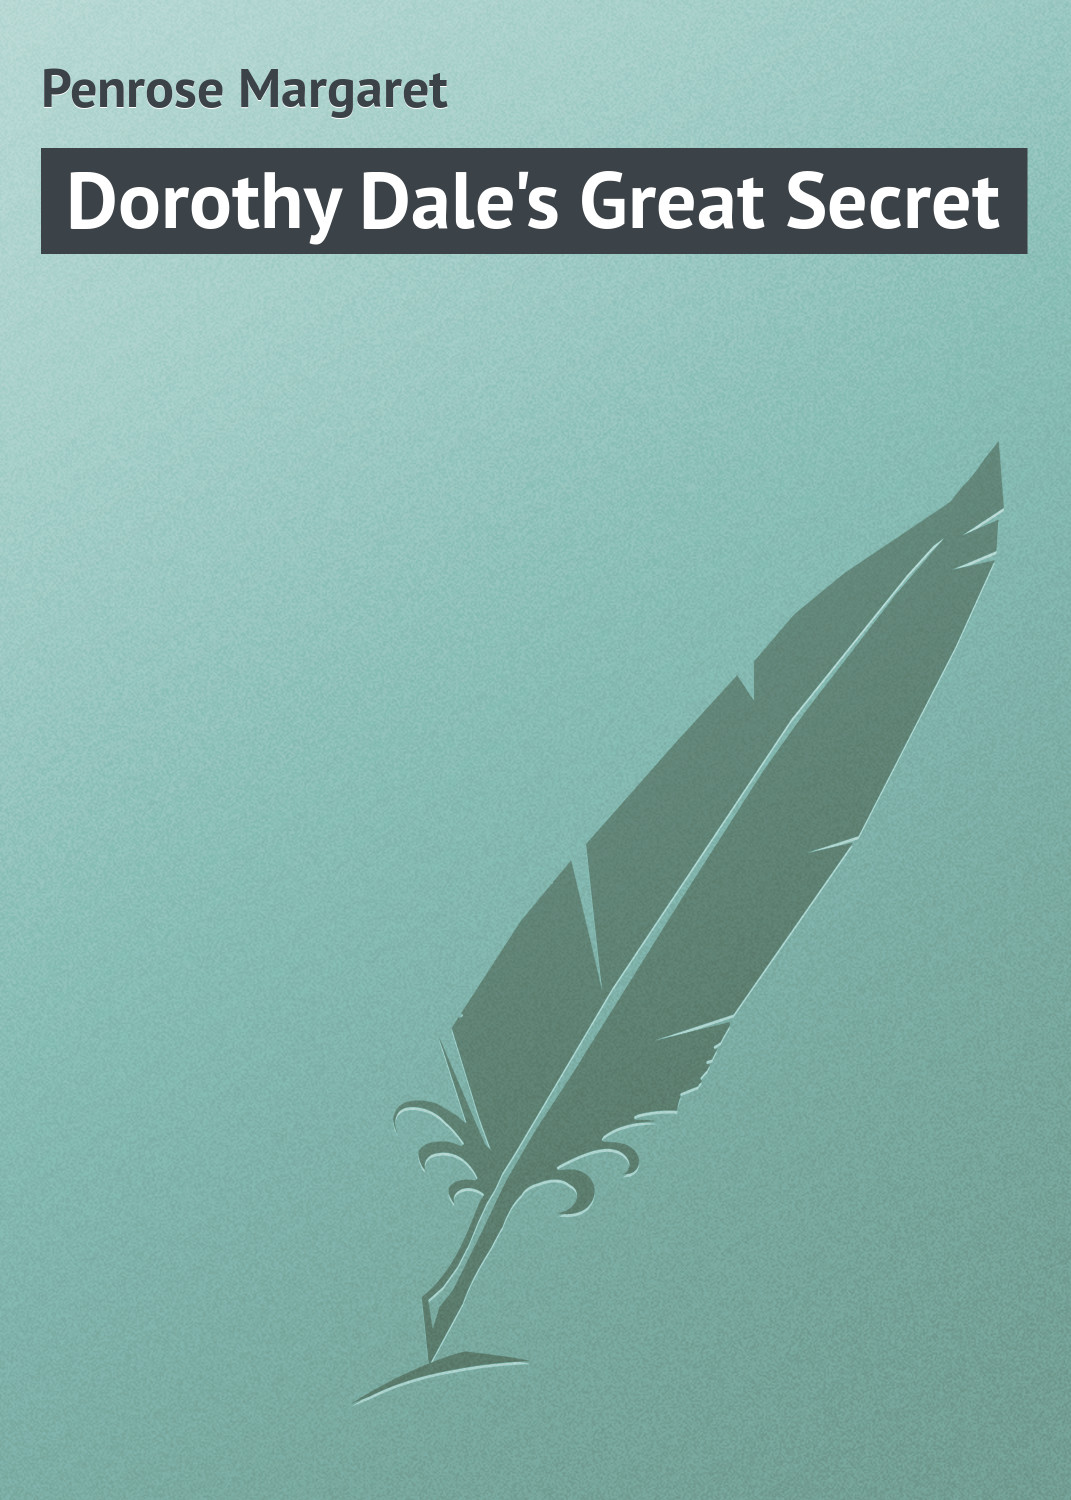 Книга Dorothy Dale's Great Secret из серии , созданная Margaret Penrose, может относится к жанру Зарубежная классика. Стоимость электронной книги Dorothy Dale's Great Secret с идентификатором 23148579 составляет 5.99 руб.